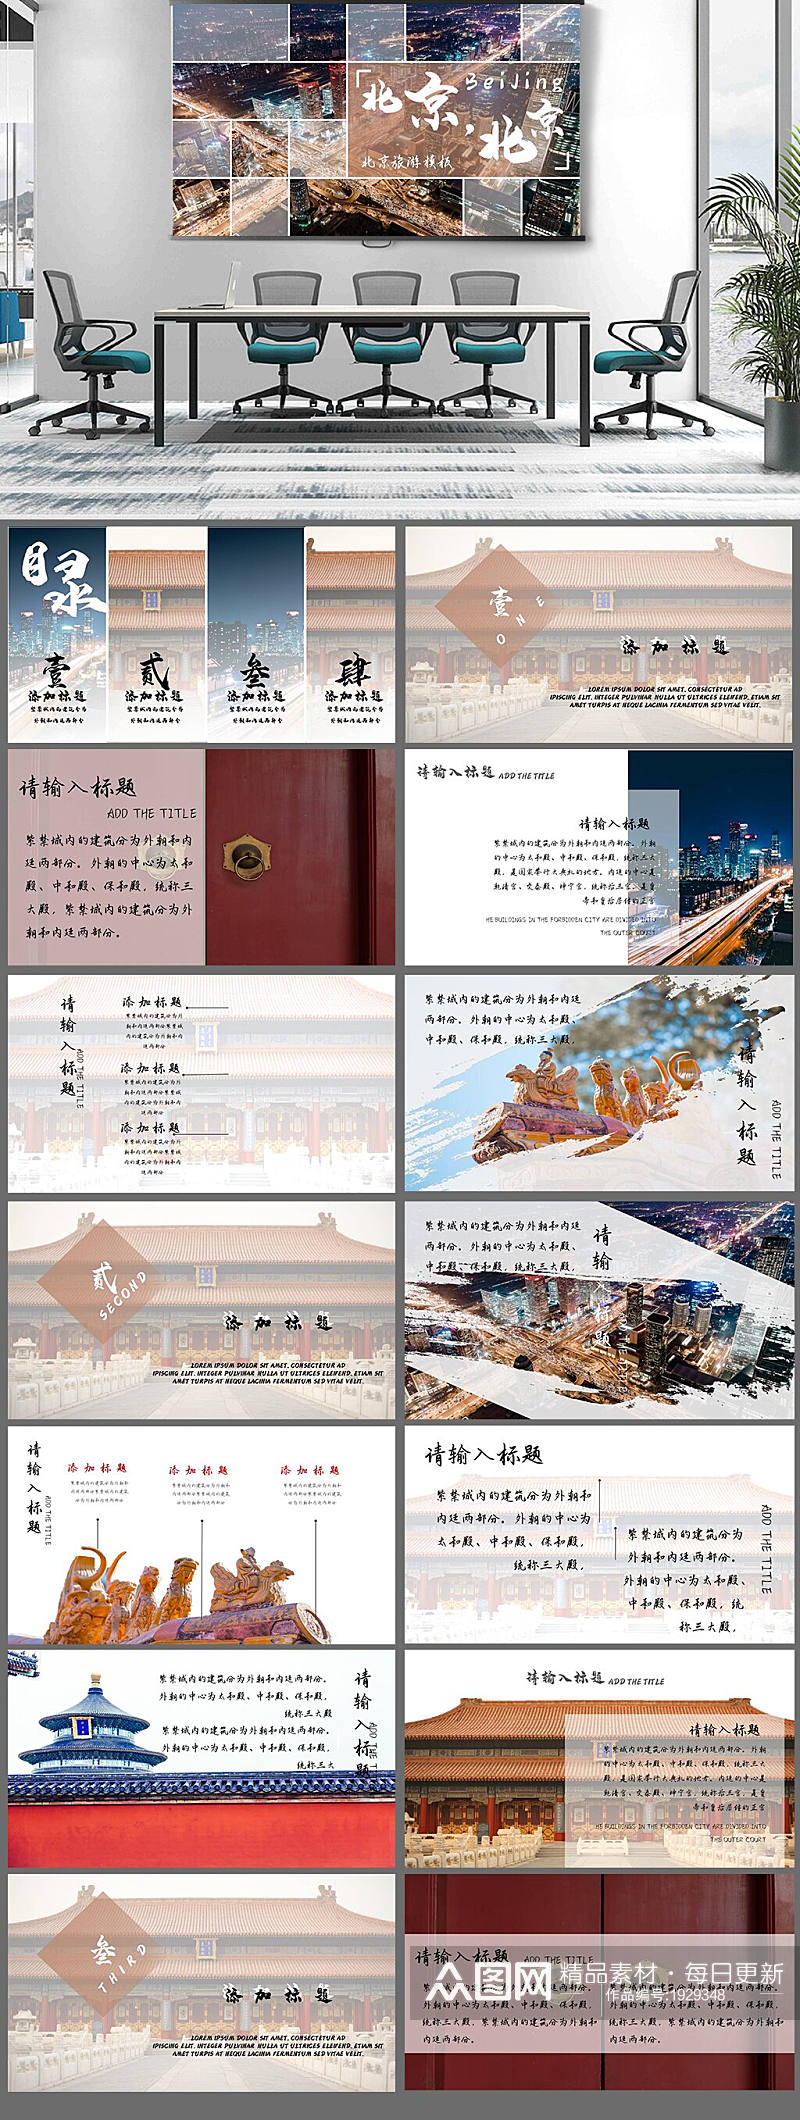 中国风北京旅游PPT模板素材